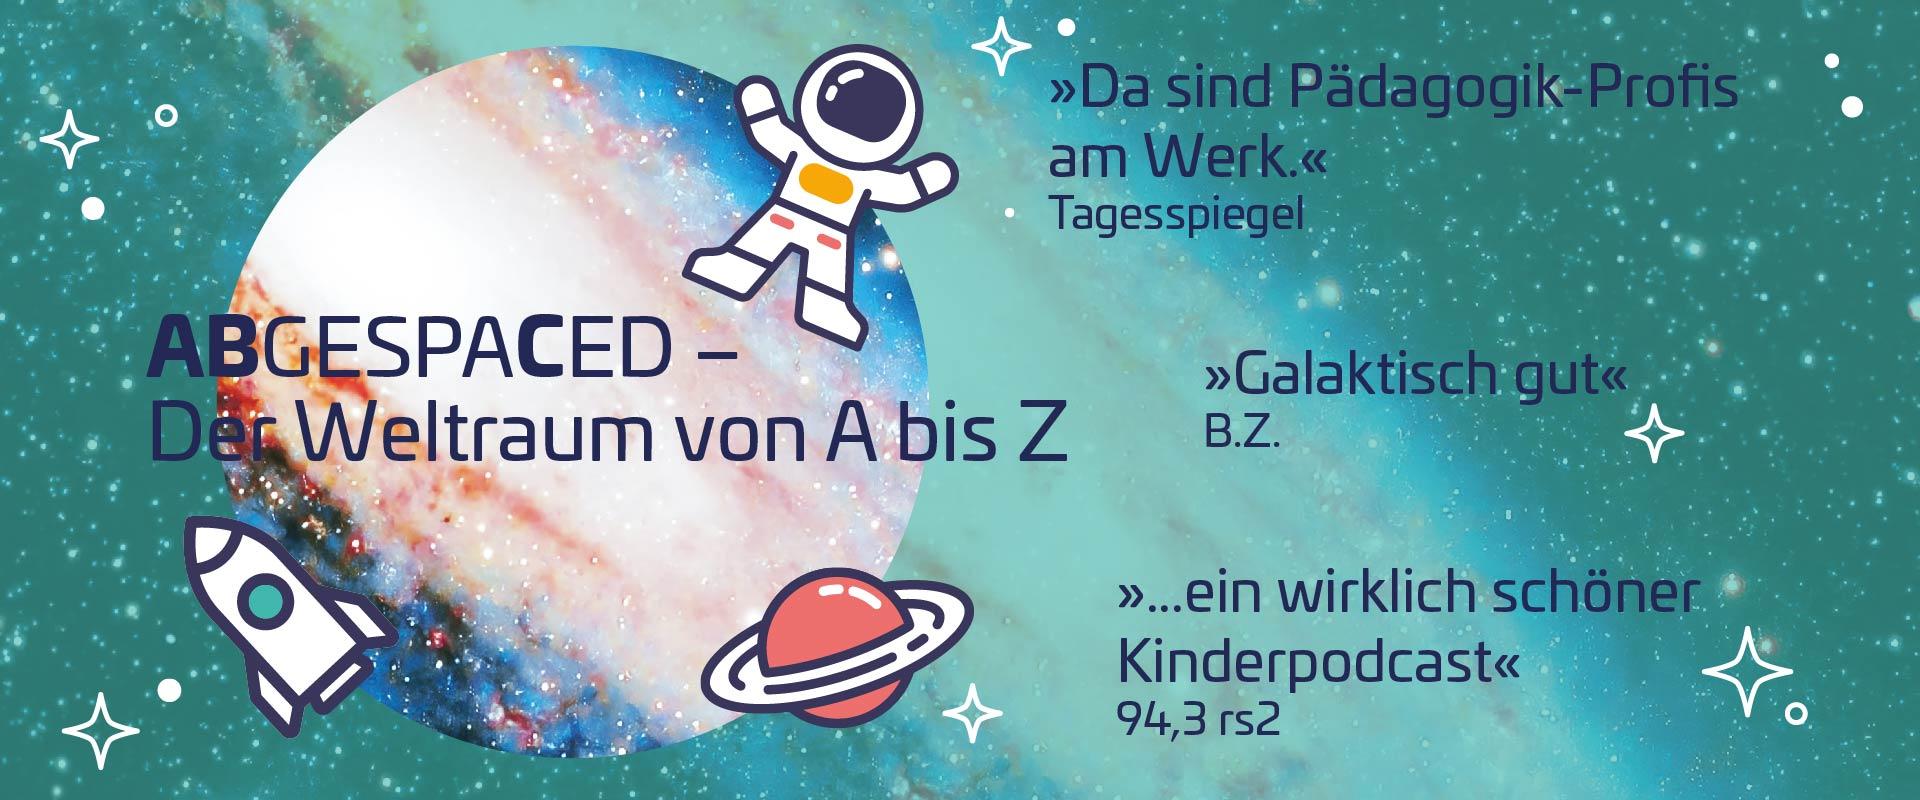 Visual Kinderpodcast der Stiftung Planetarium Berlin »Abgespaced – Der Weltraum von A bis Z« mit Medienzitaten